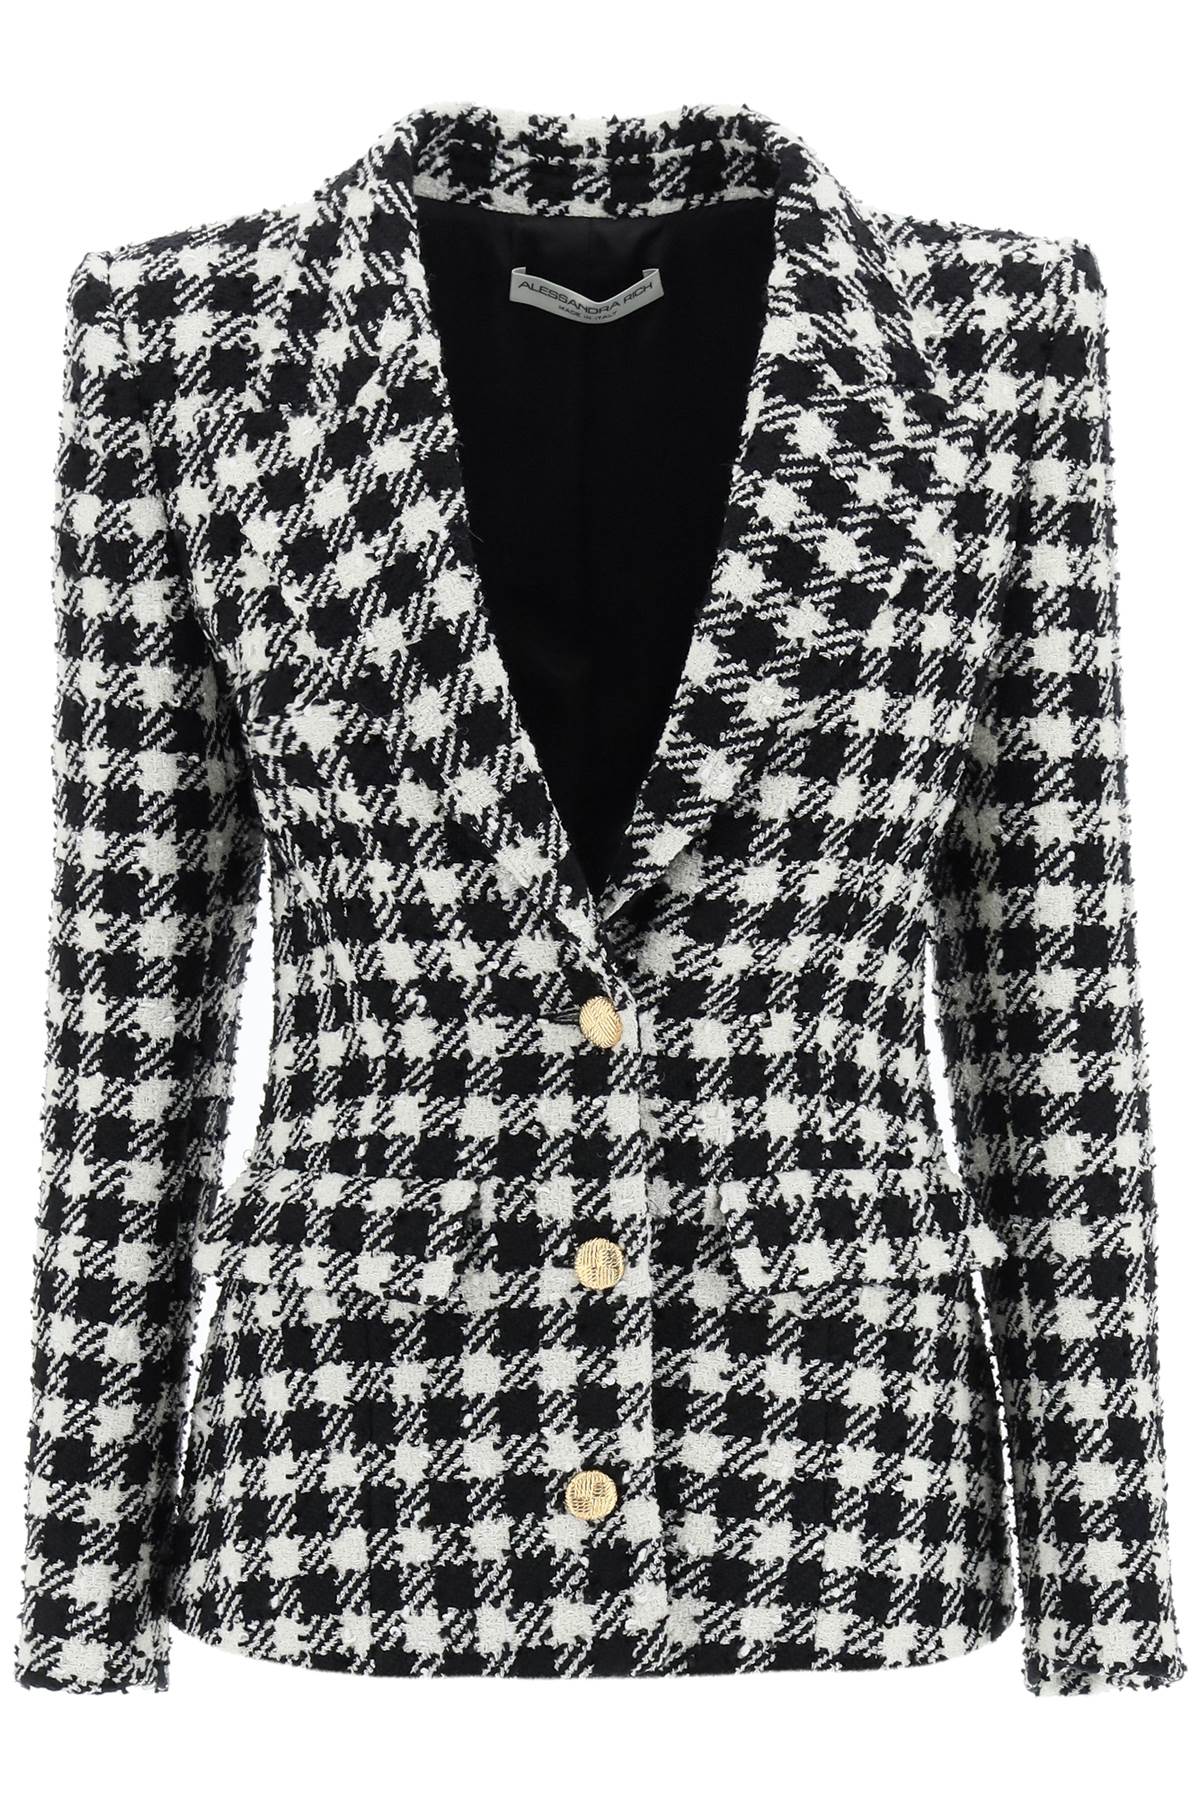 Alessandra Rich Gingham Virgin Wool Blend Tweed Jacket